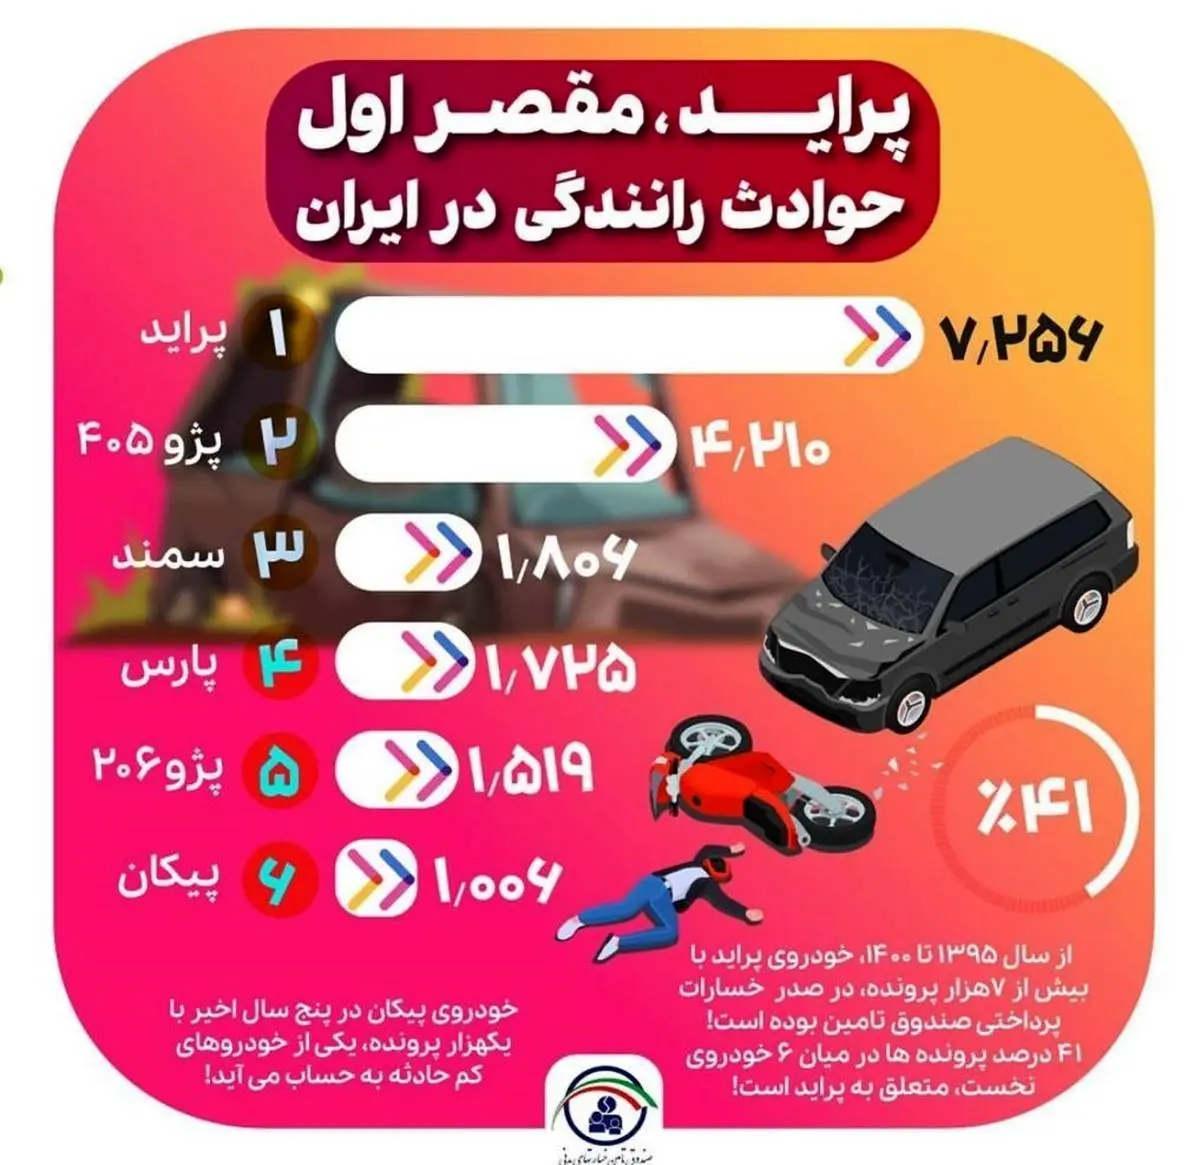 سهم 41 درصدی پراید در حوادث رانندگی ایران